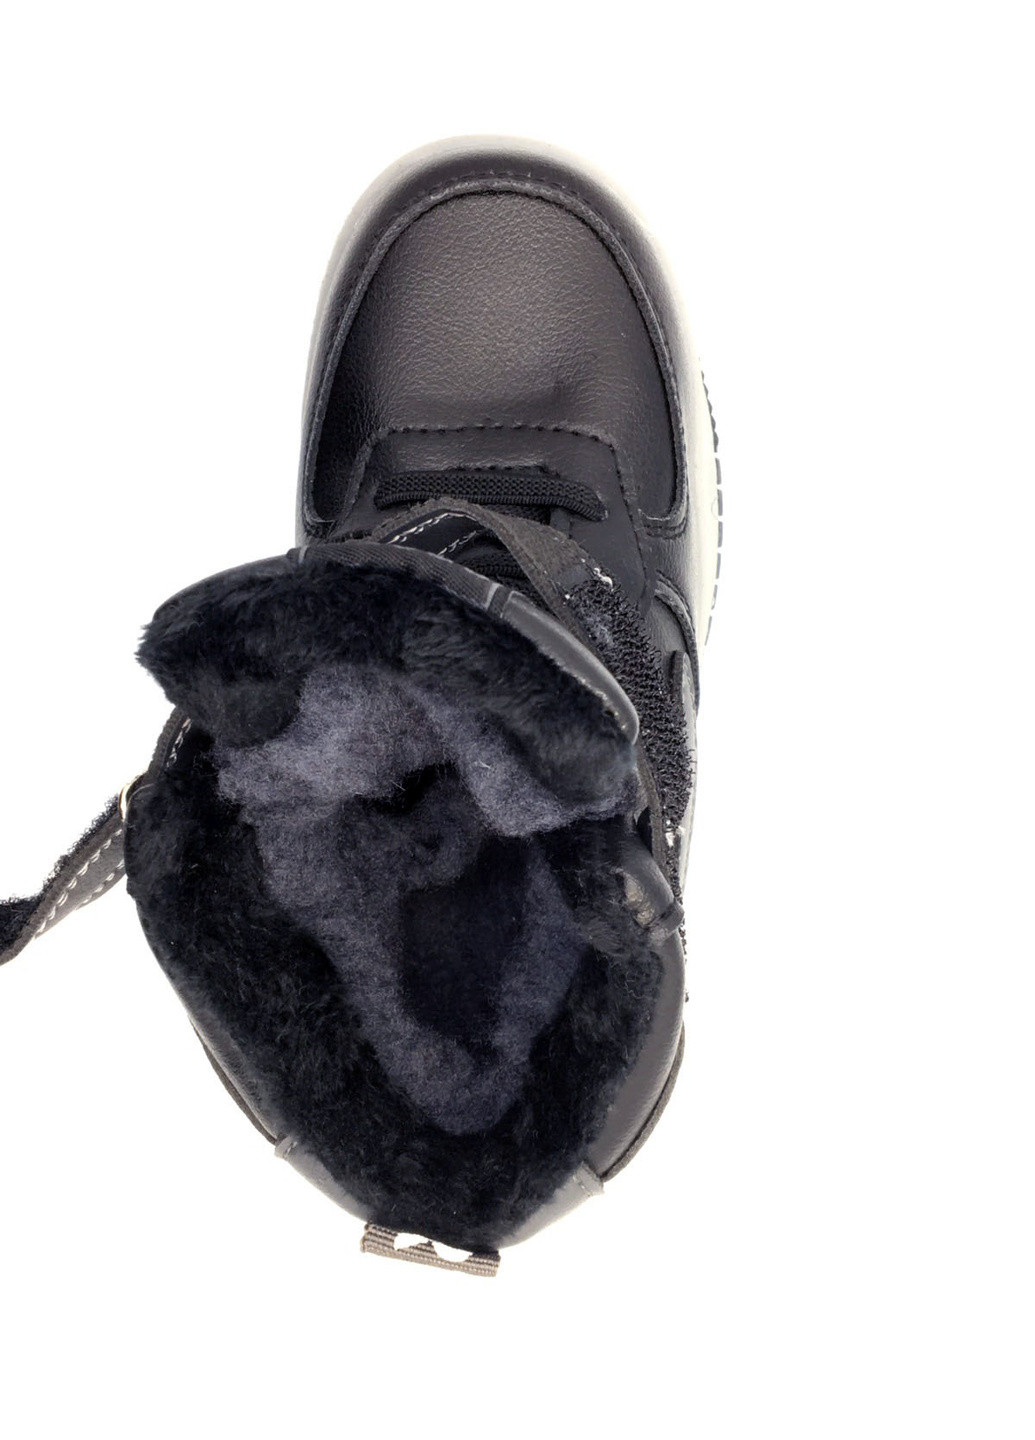 Черные повседневные зимние зимние ботинки Канарейка